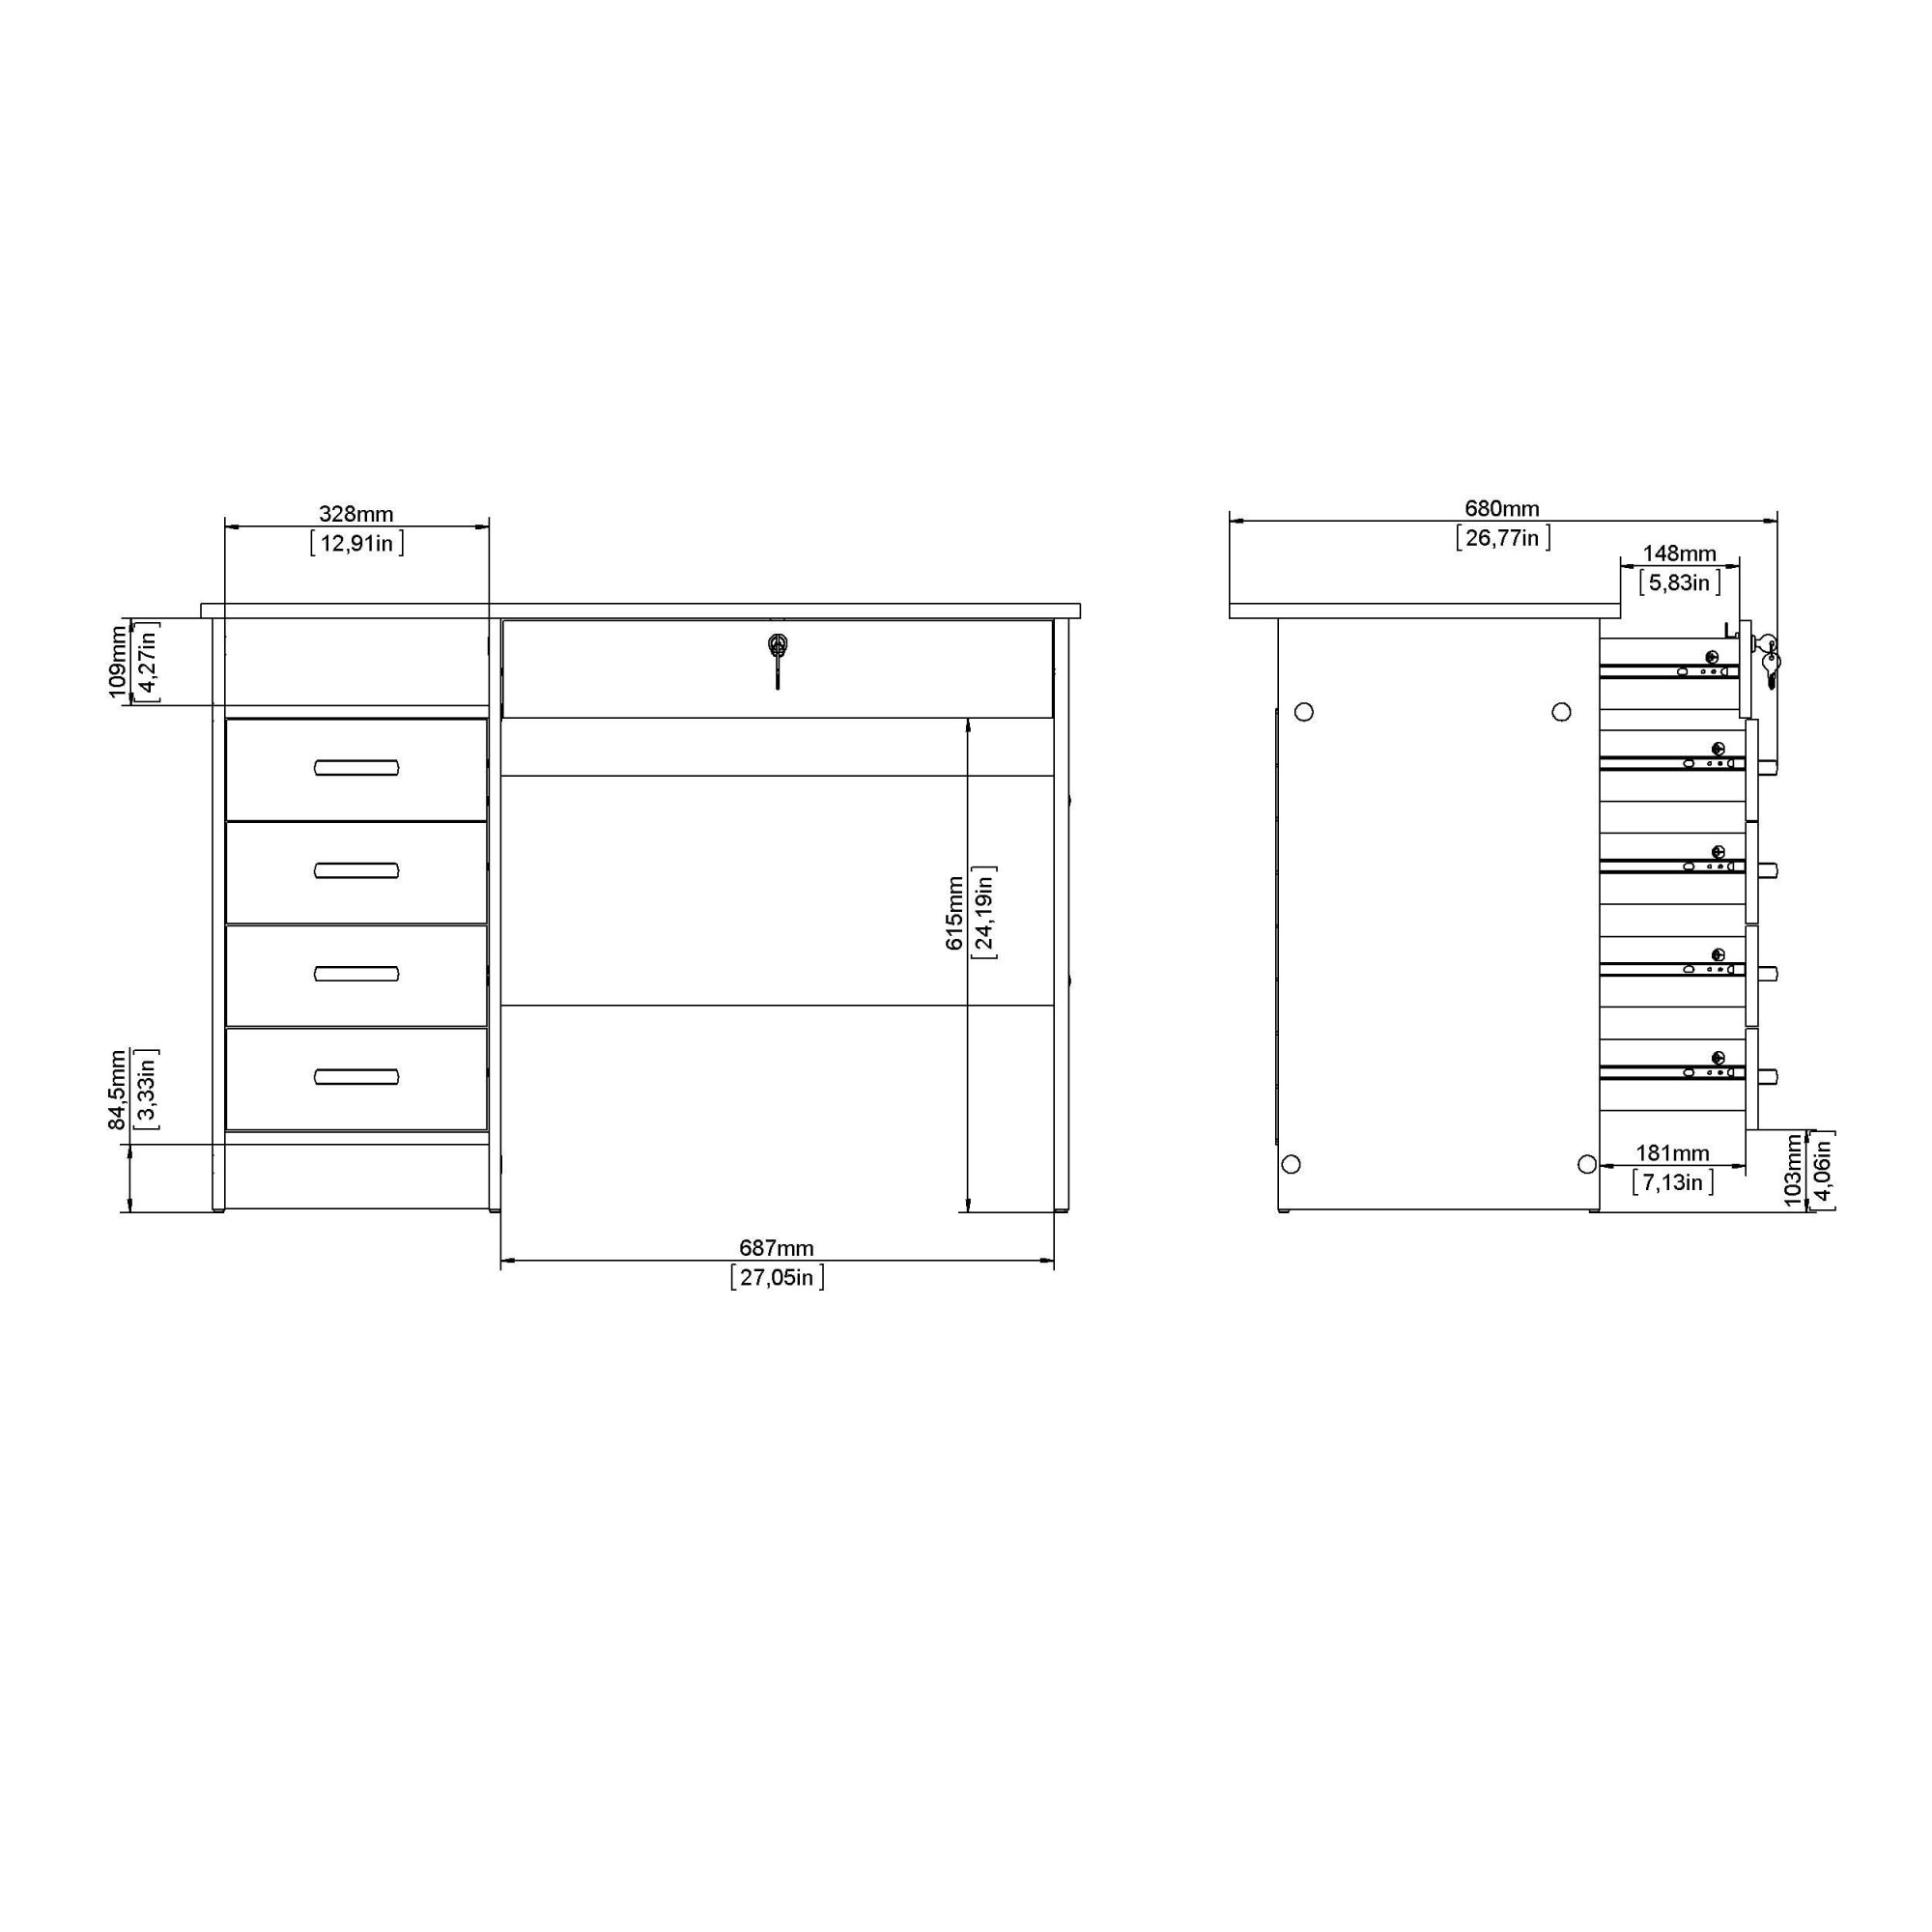 Home affaire Schreibtisch »Funktion Plus, Arbeitstisch, Bürotisch«, mit 5 Schubladen, 1 abschließbar, 1 offenes Fach, Breite 109 cm